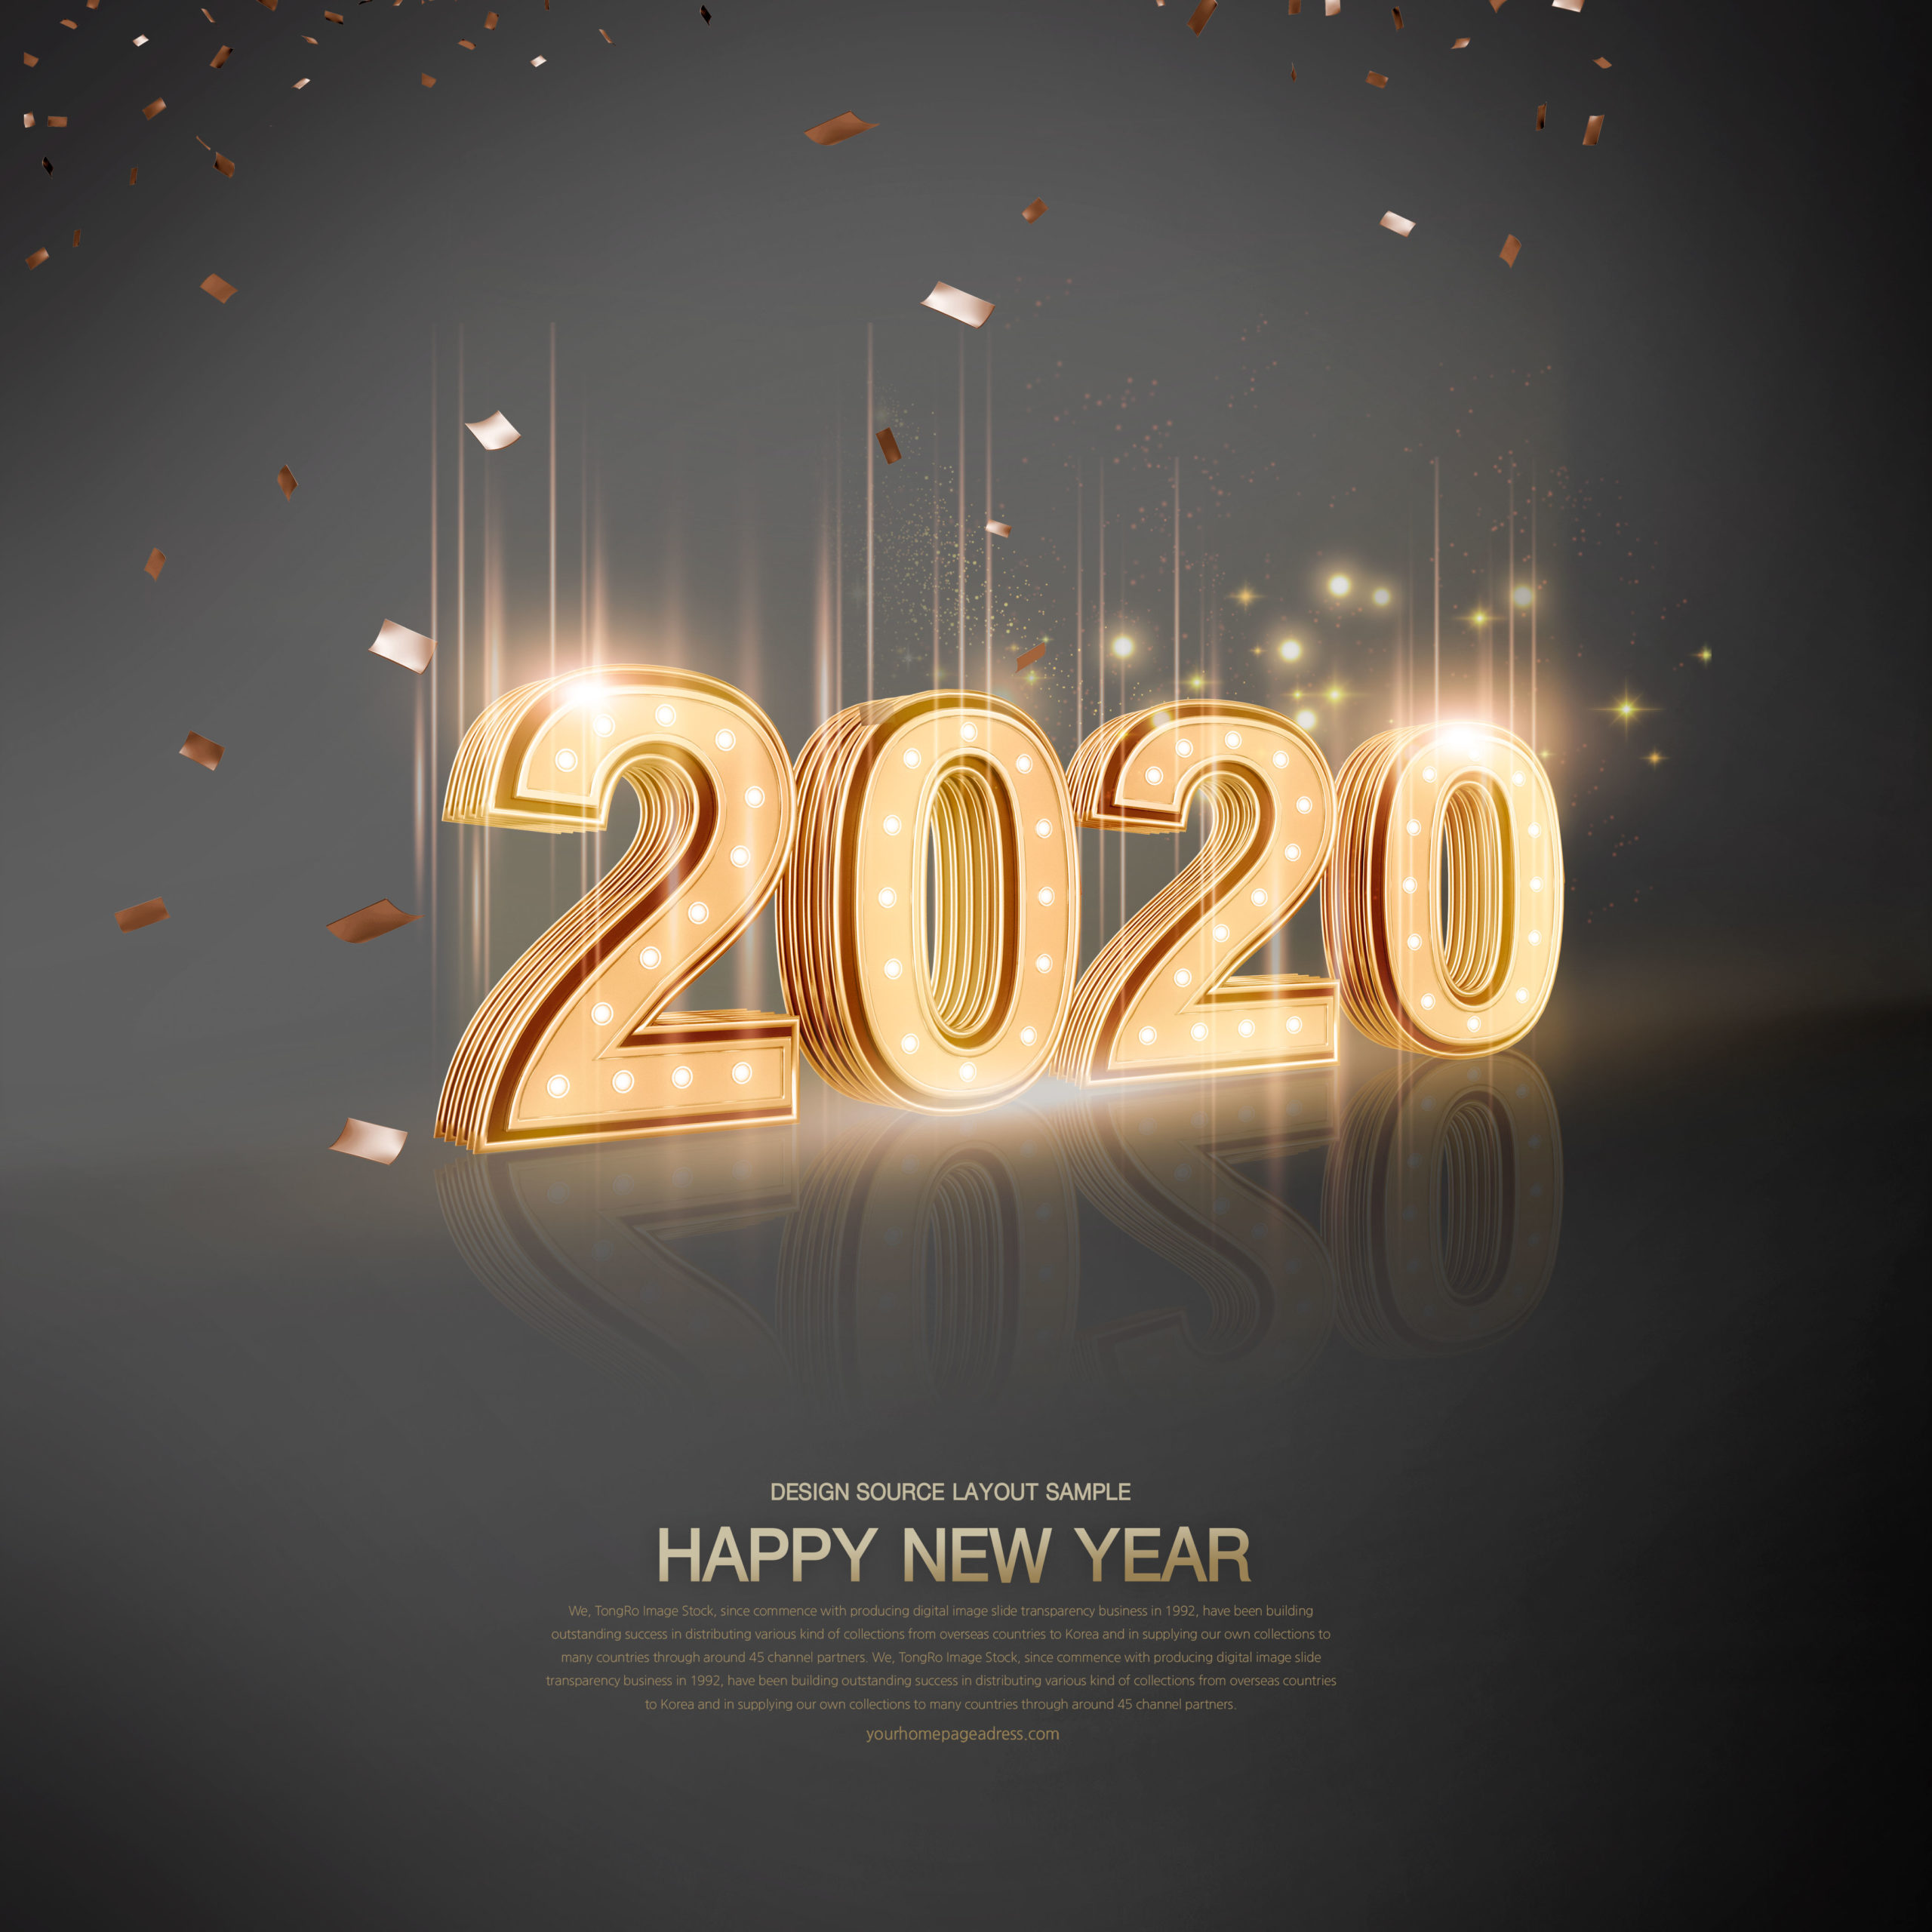 豪华金色2020新年快乐字体海报/贺卡/传单设计素材合集插图(4)